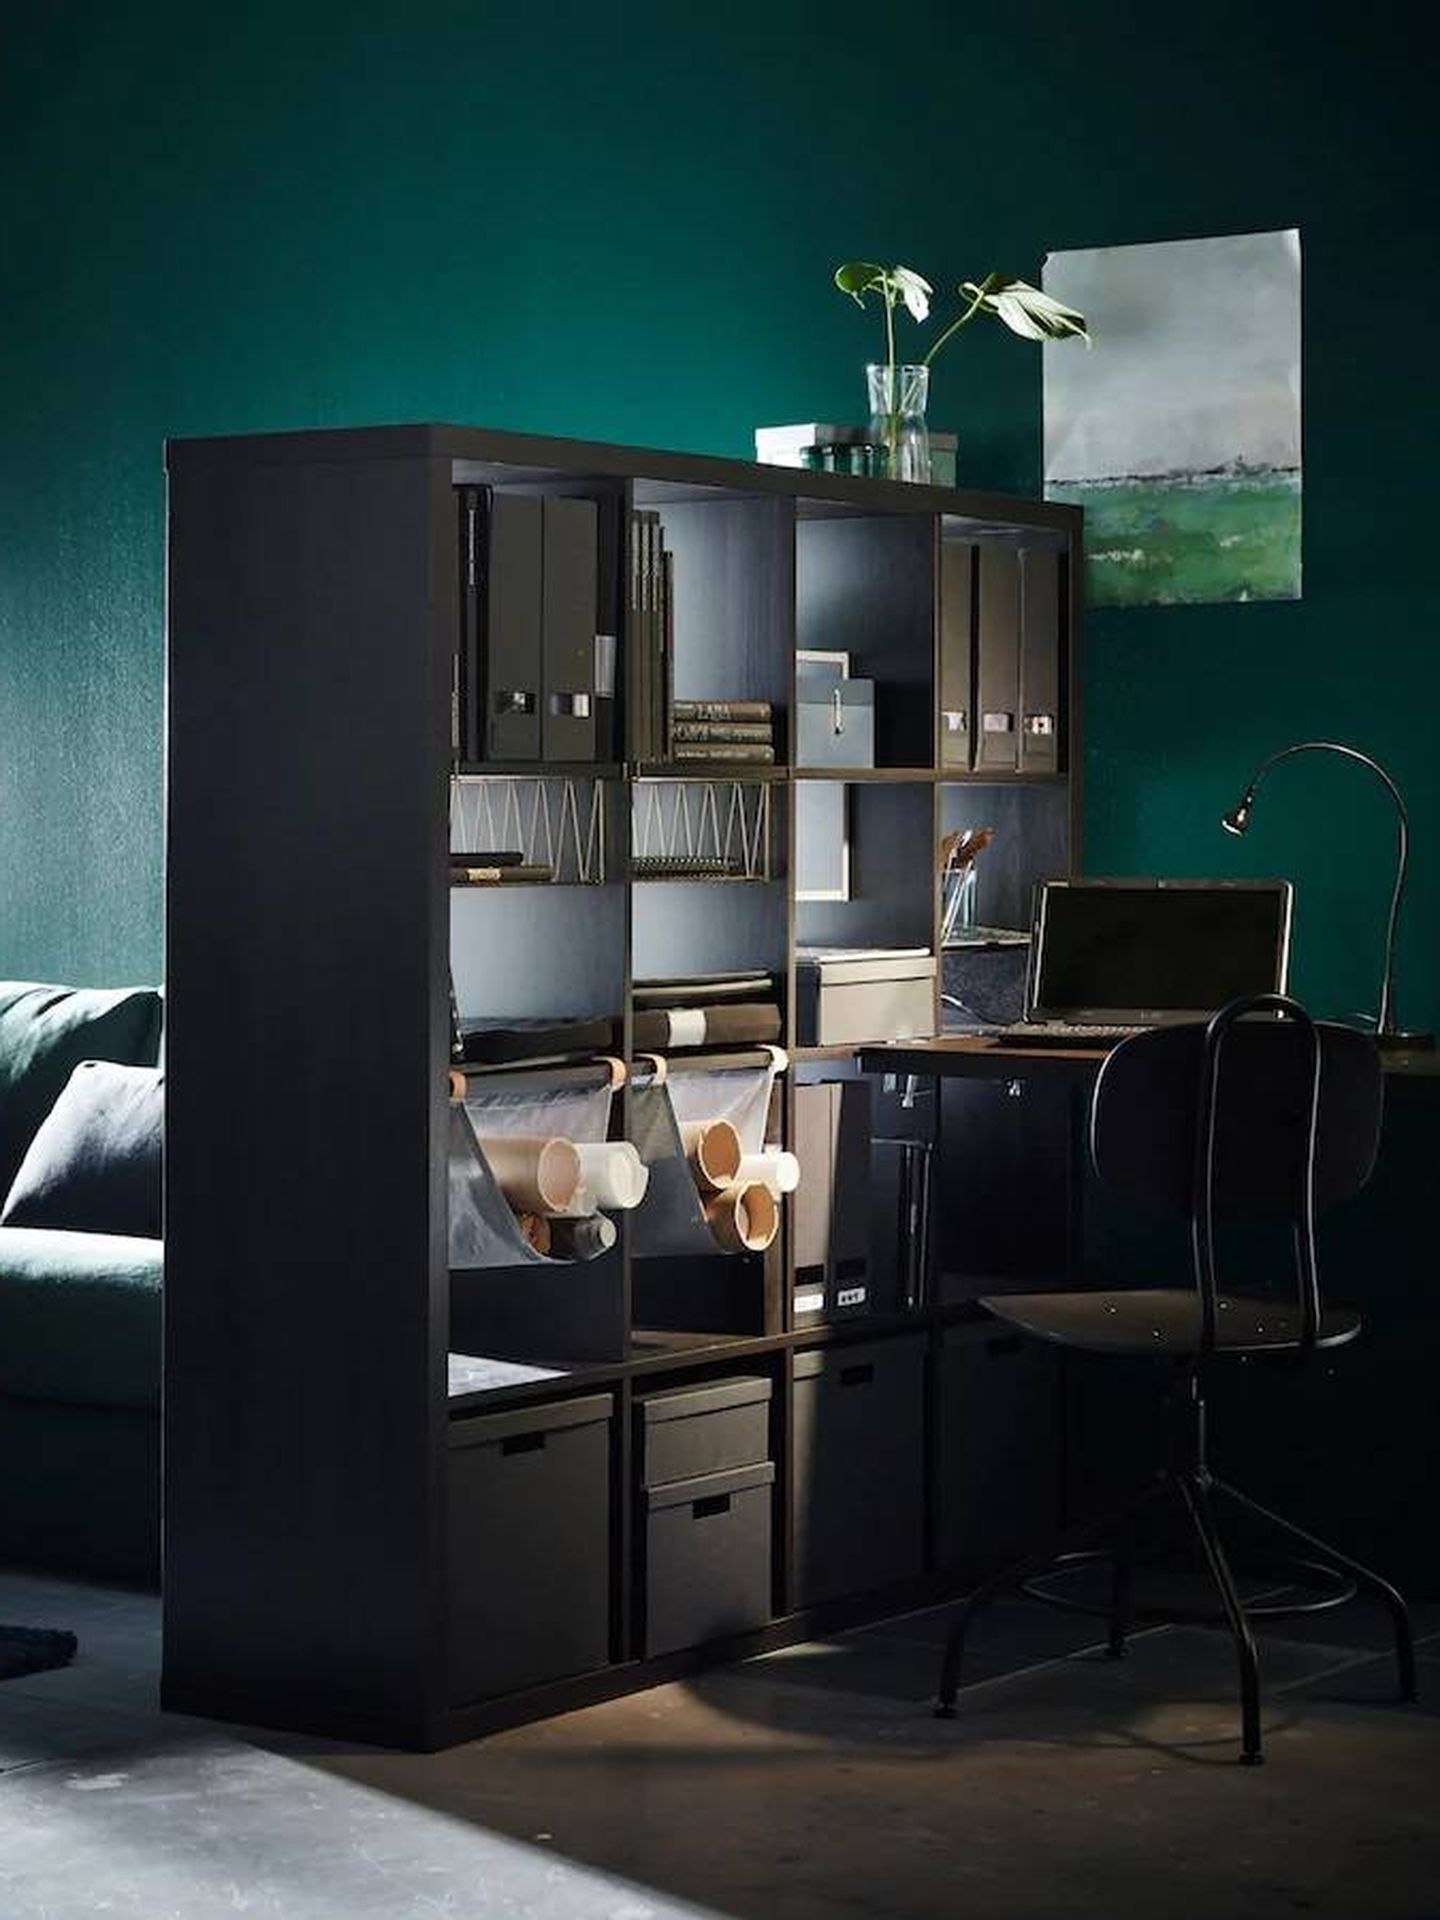 Con esta estantería de Ikea separan ambientes y sumas espacio de almacenaje. (Cortesía)